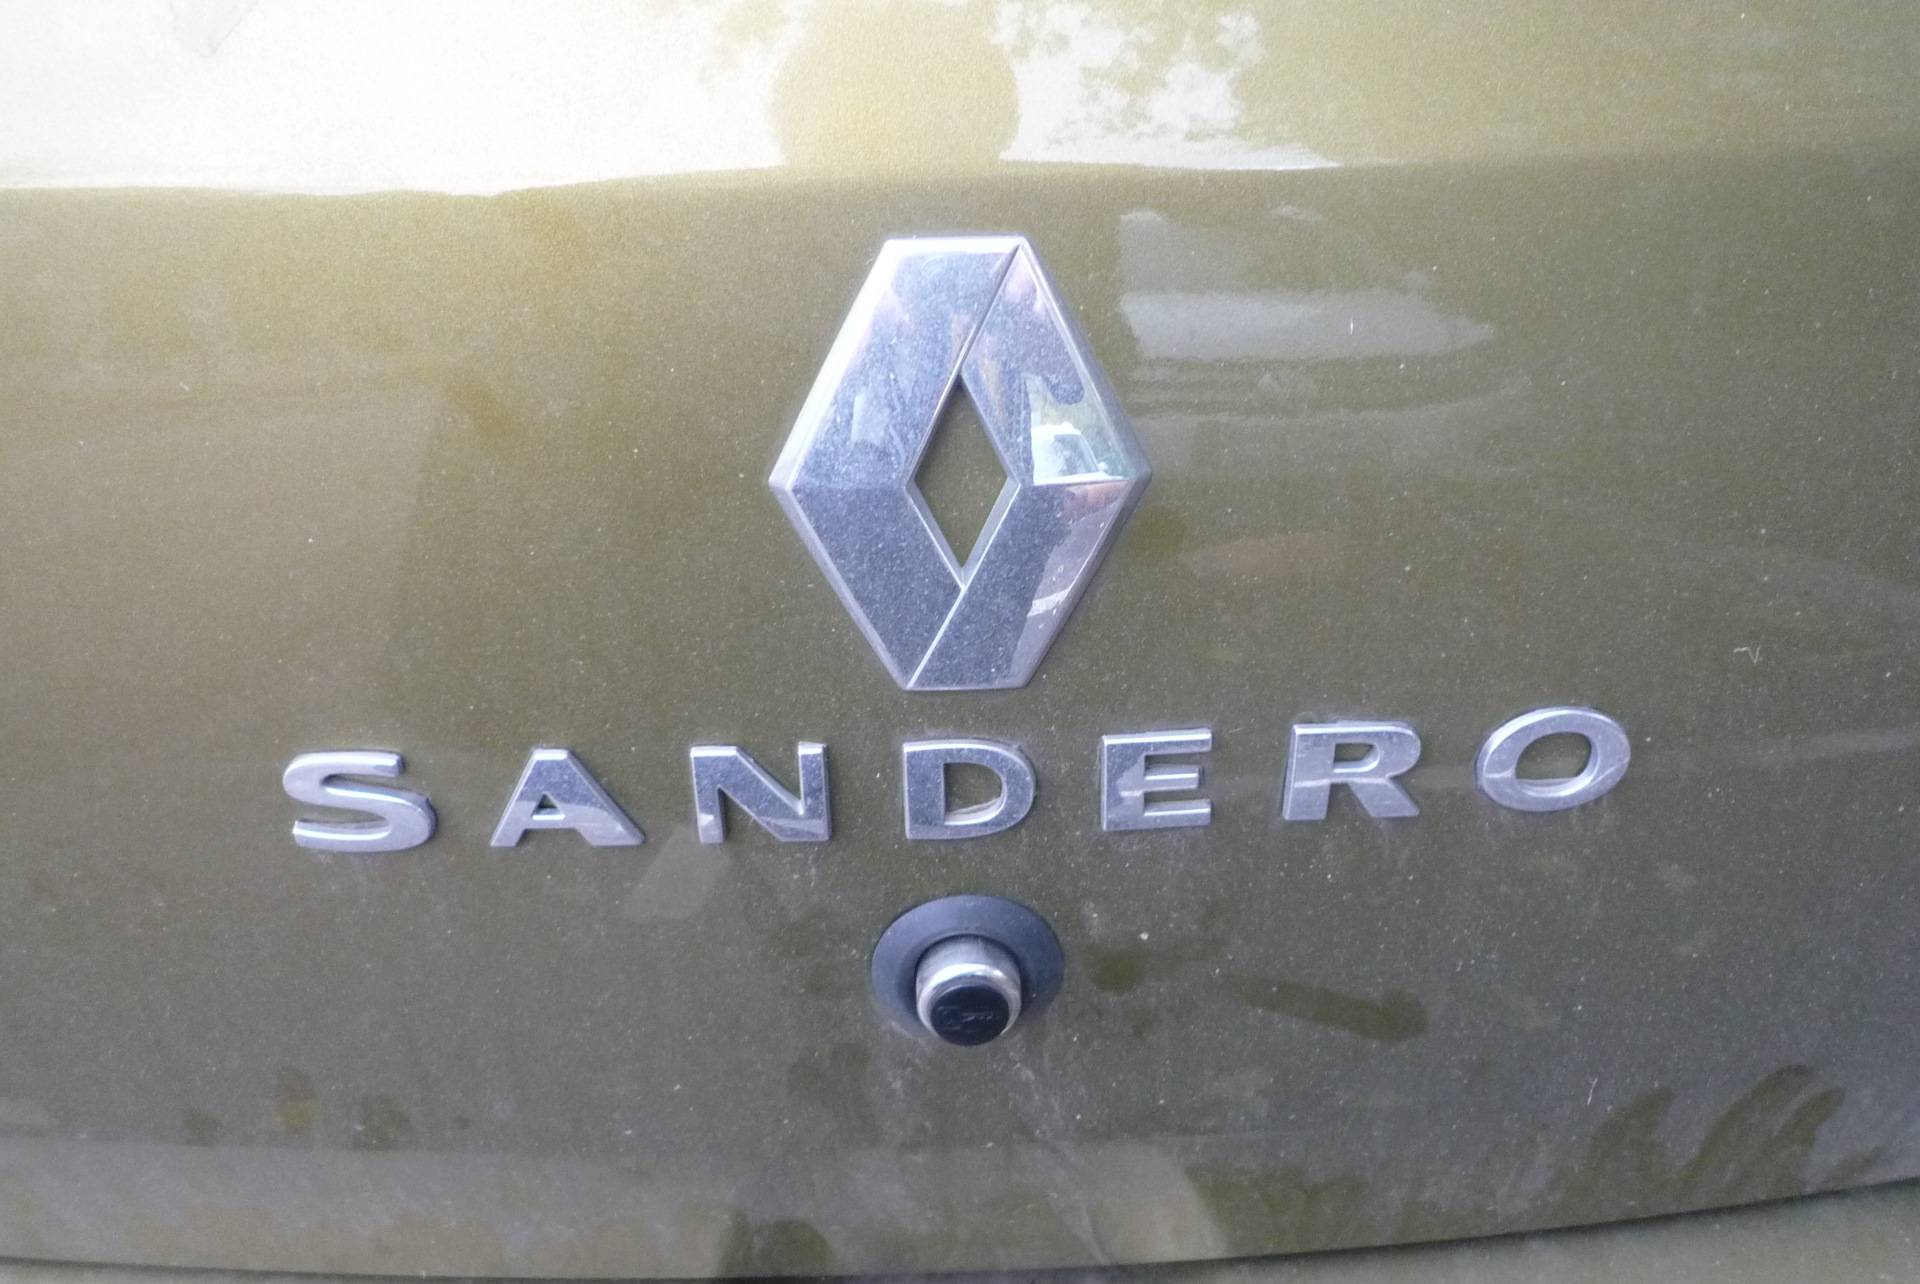 Расшифровка эмблем логотипов основных автопроизводителей